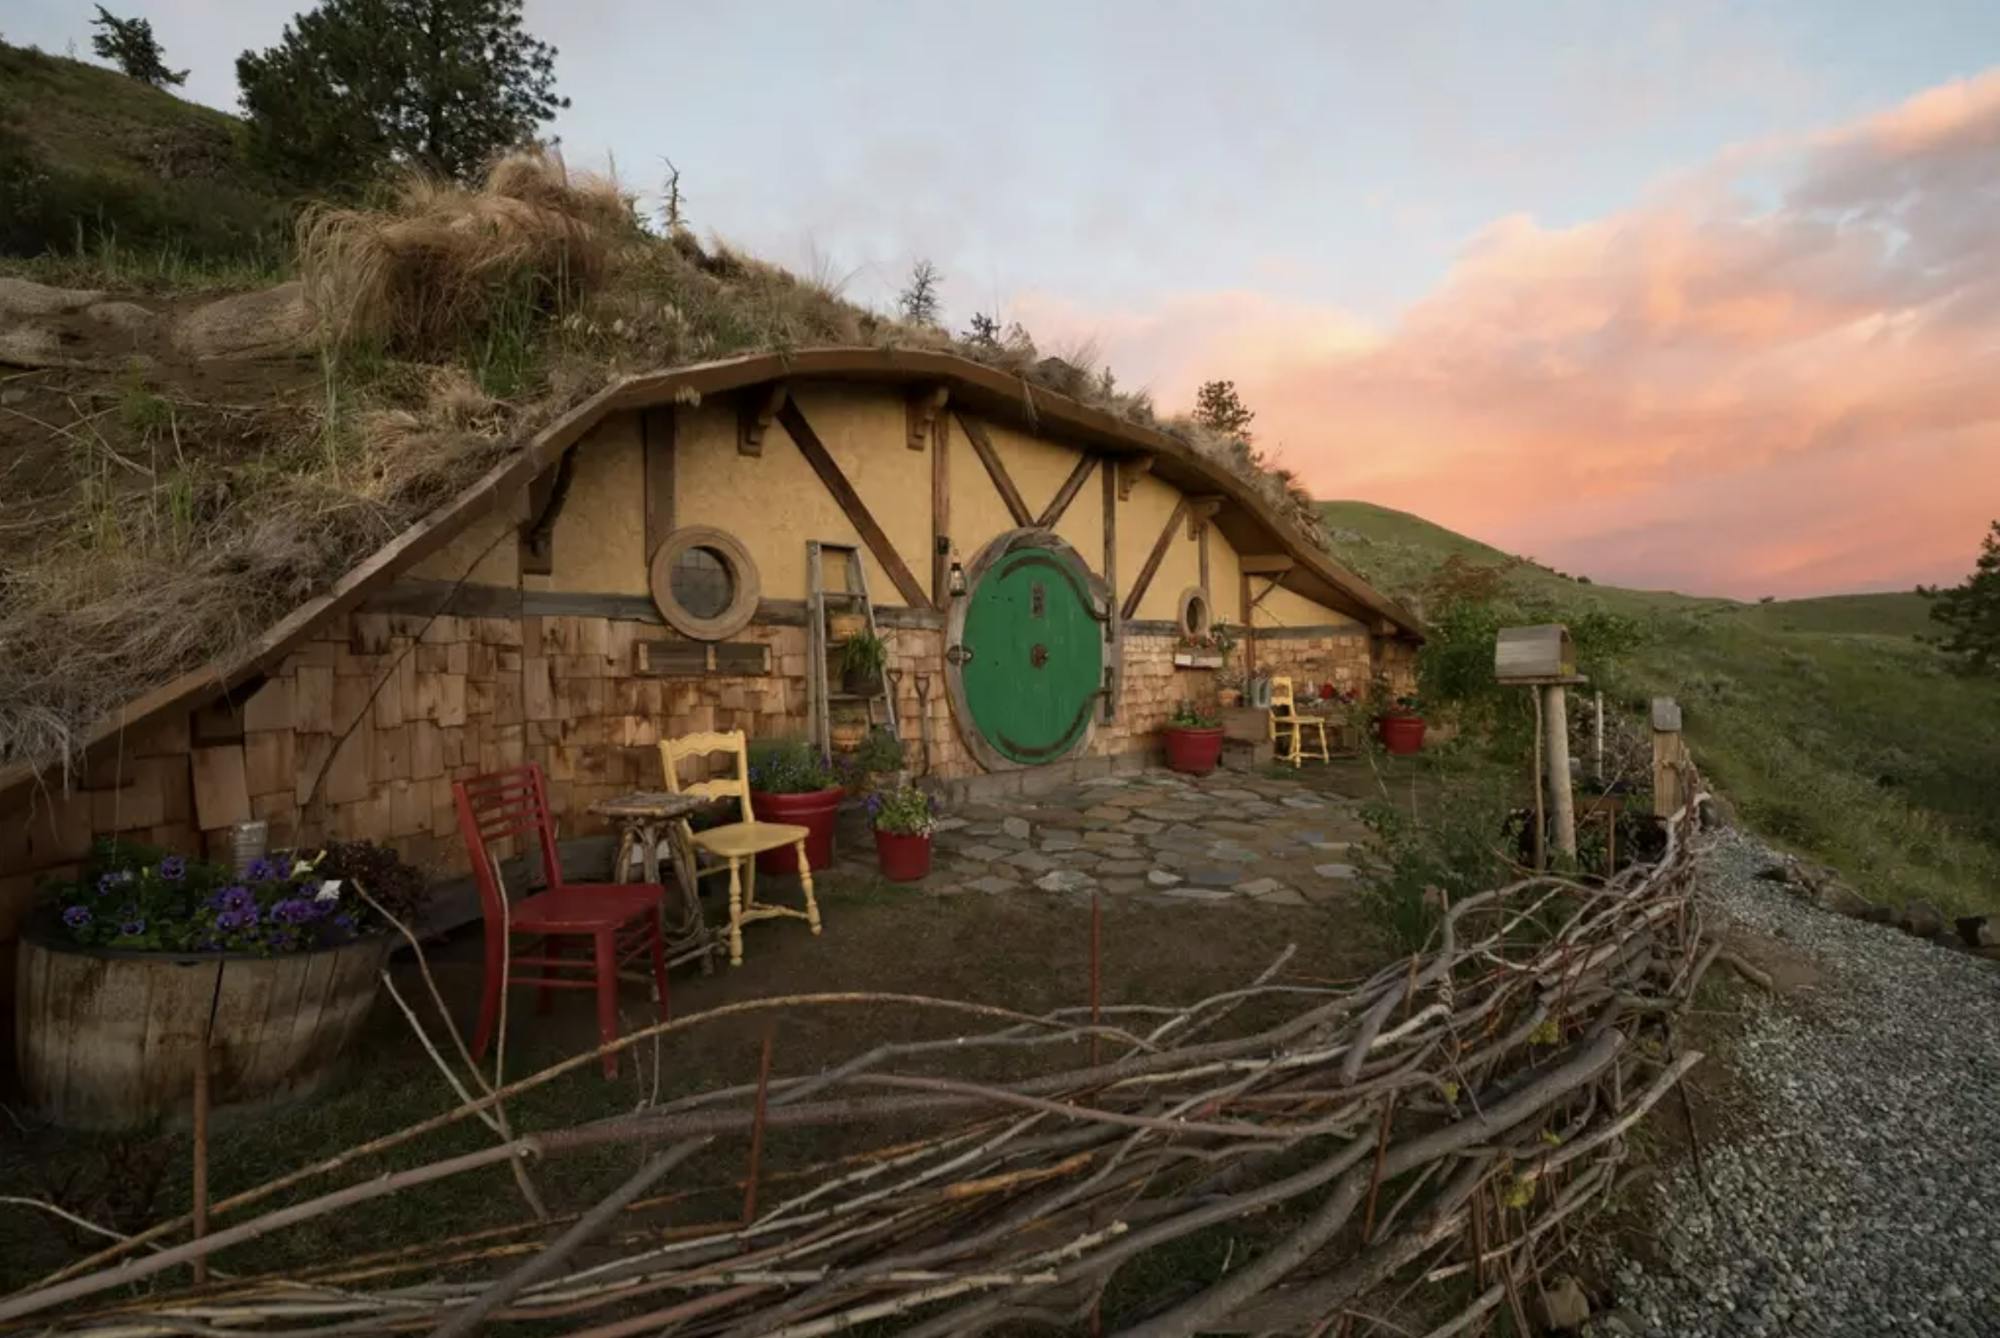 Das kleine Hobbit-Haus mit der typischen runden Tür und den süßen Gartenstühlen im Vorgarten. Das Häuschen wurde in den Hügel eingebaut und befindet sich umgeben von einer wundervollen Landschaft.